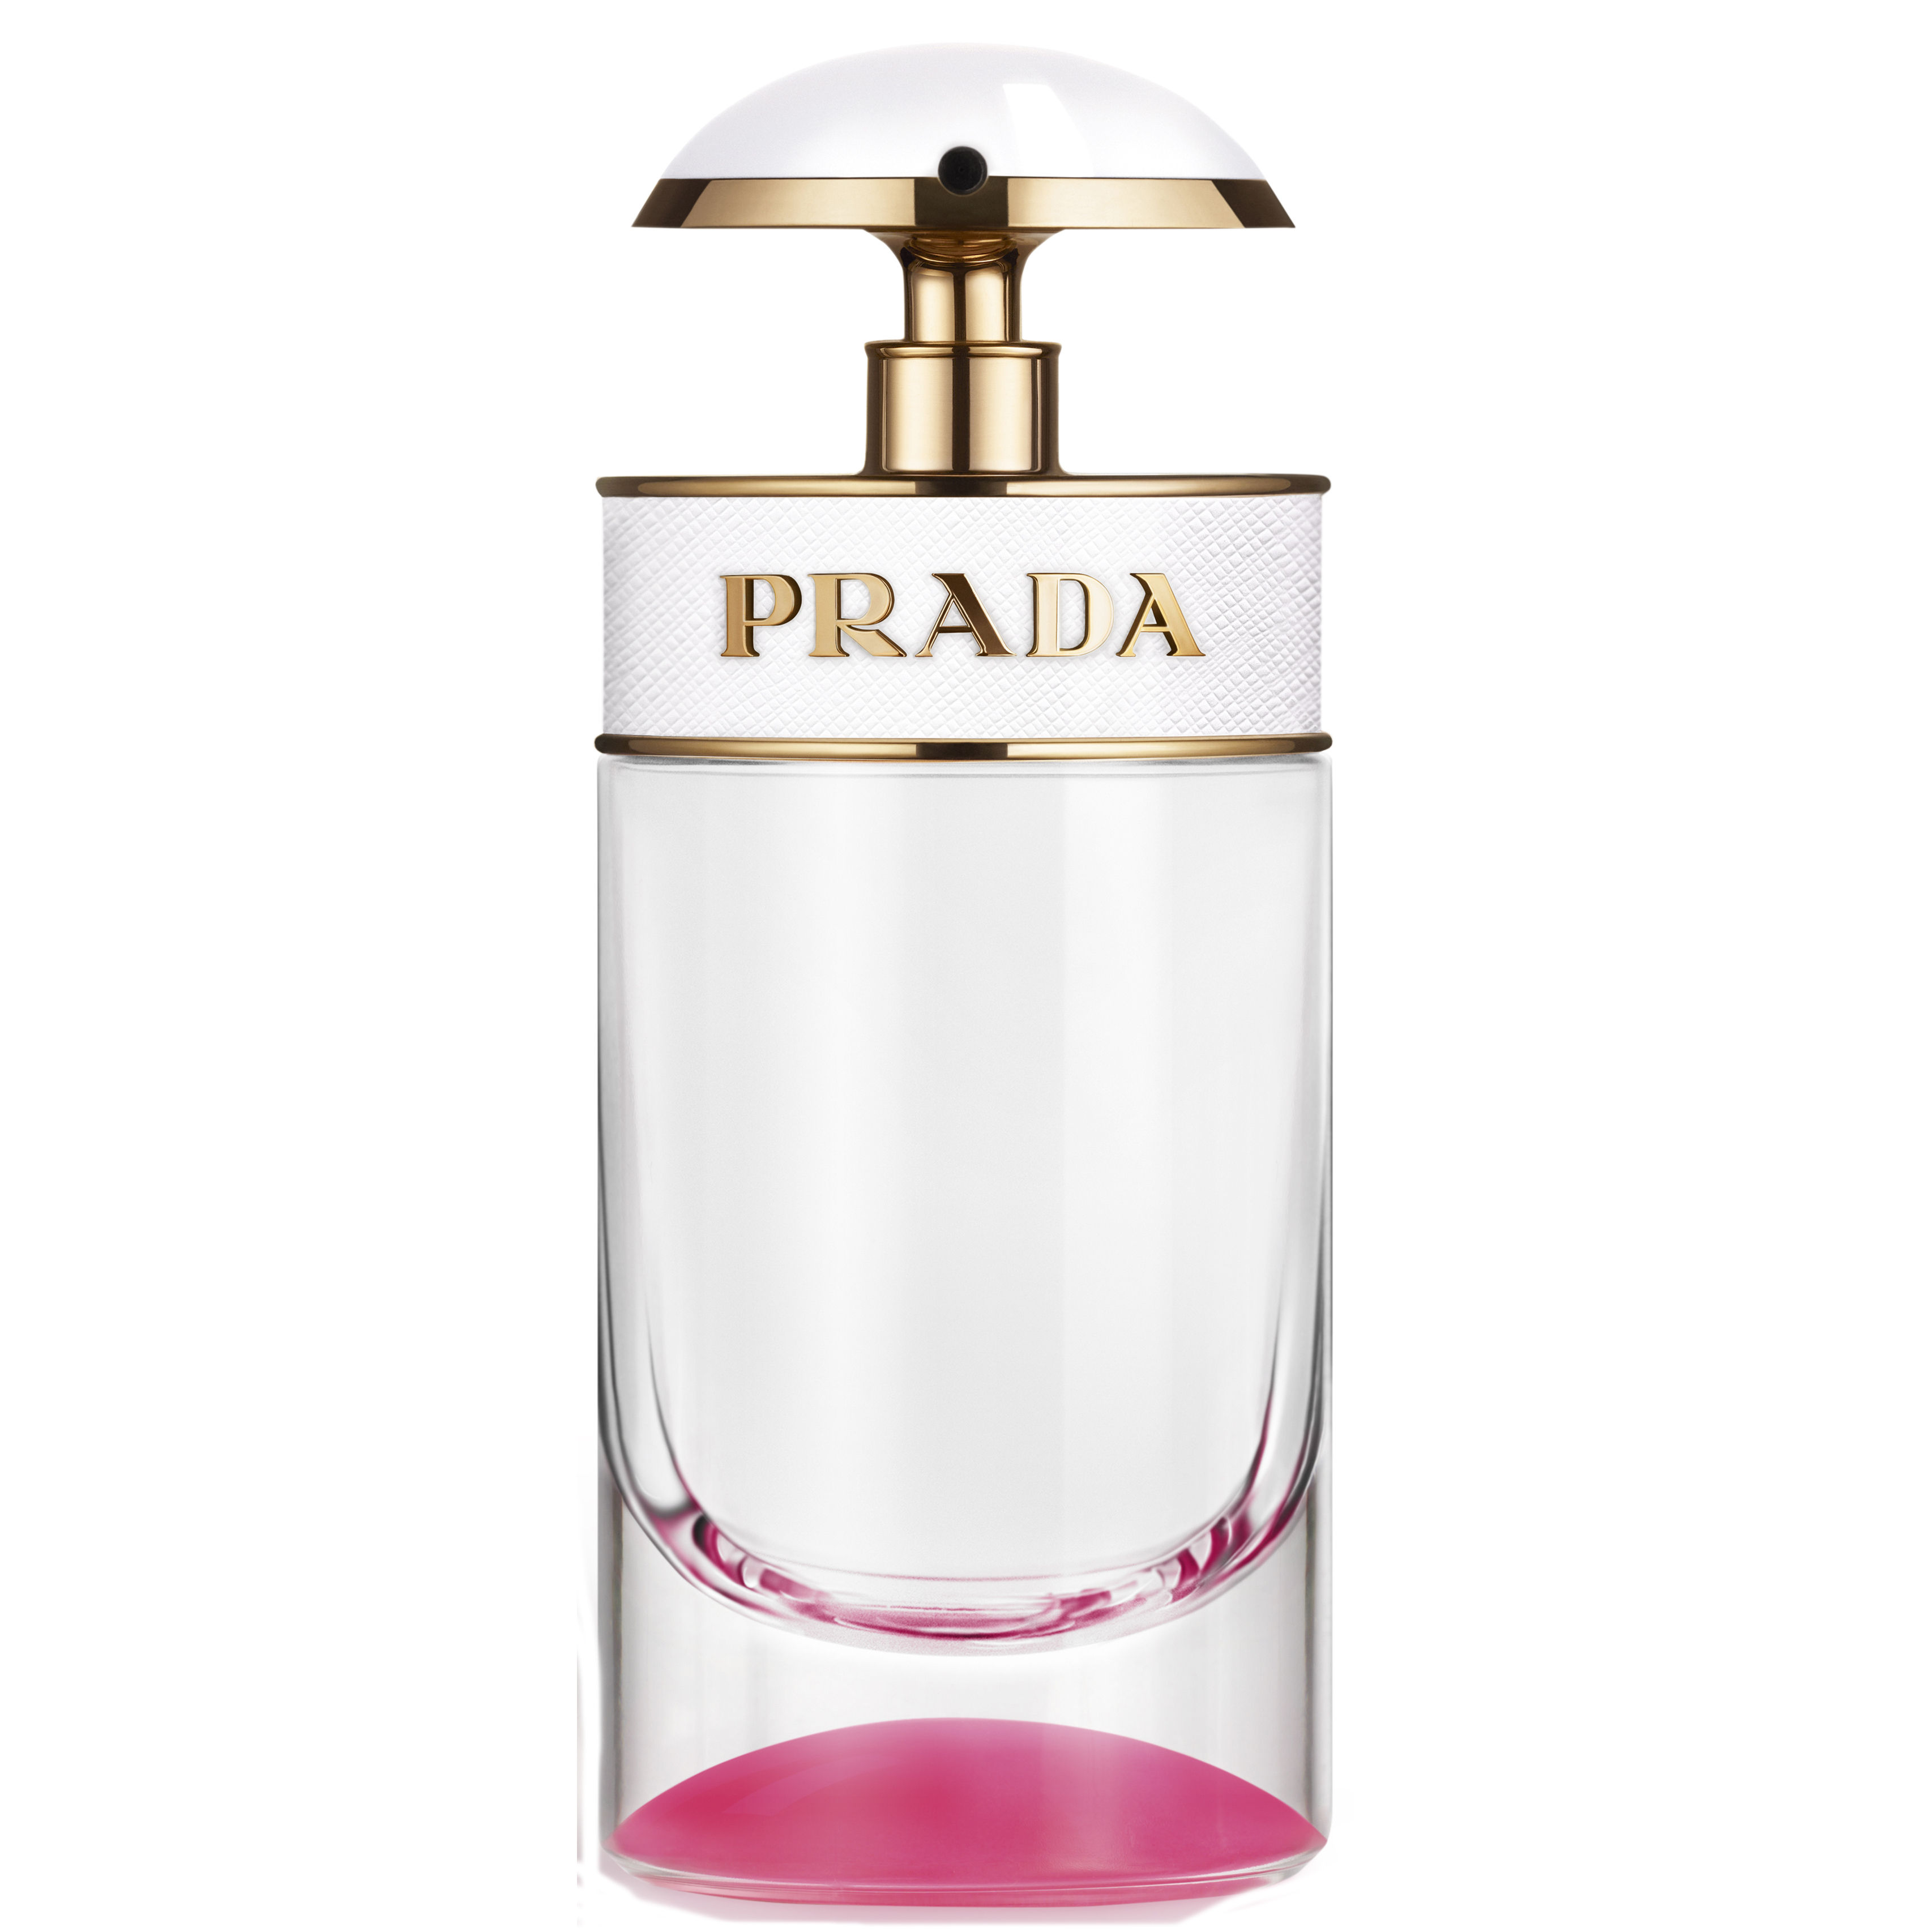 prada-candy-kiss-eau-de-parfum-spray-50-ml